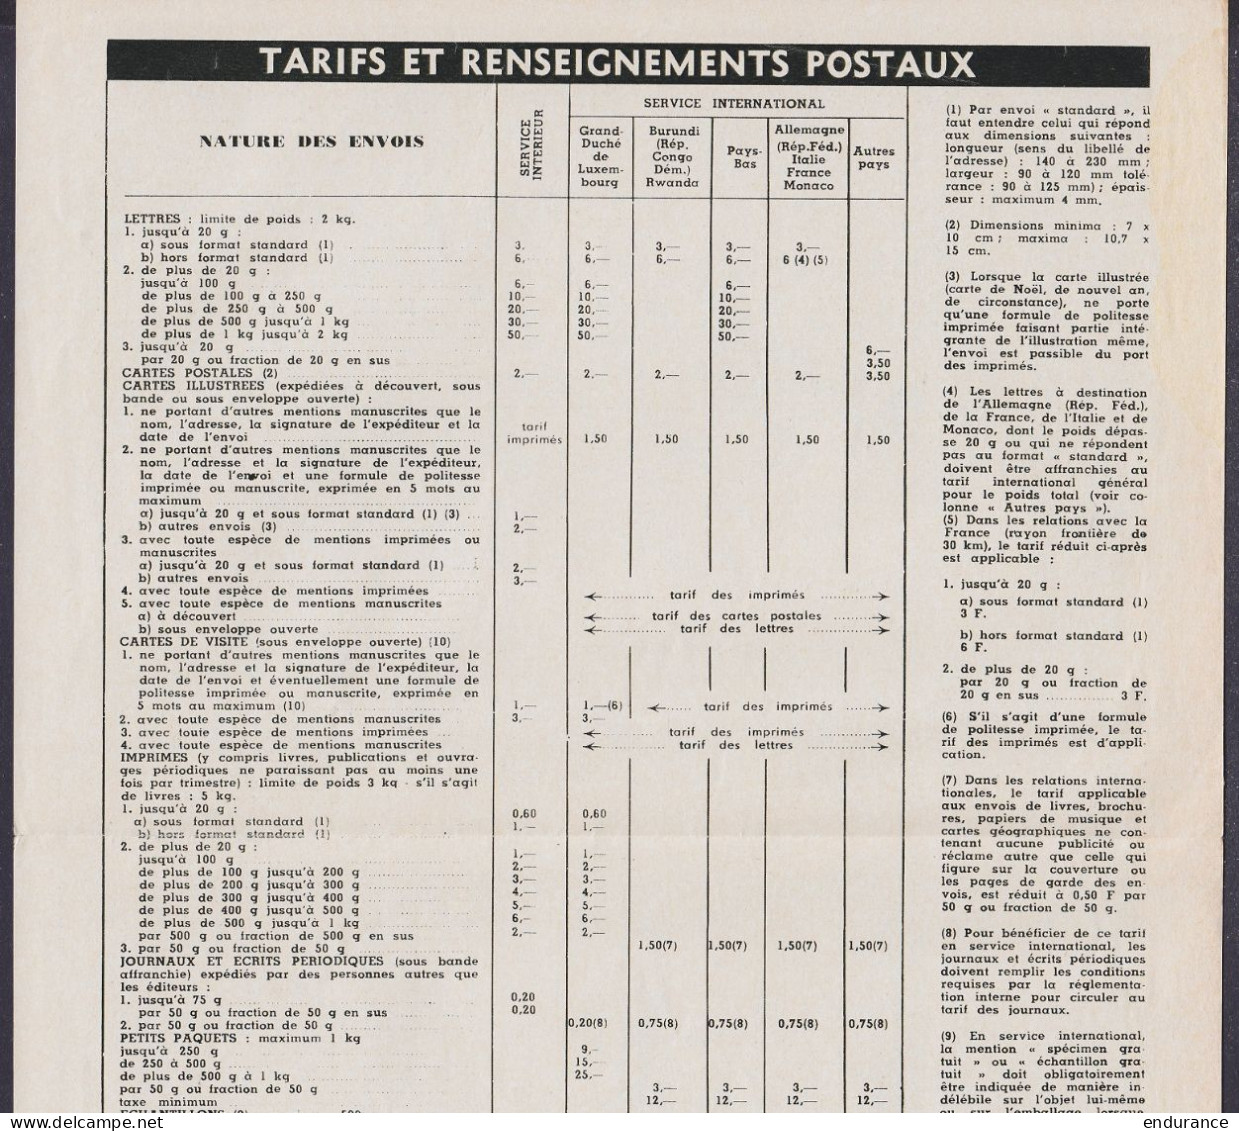 Belgique - Calendrier Du Facteur 1967 Avec Tarifs Et Renseignements Postaux (feuillet Format A4) - Postal Rates